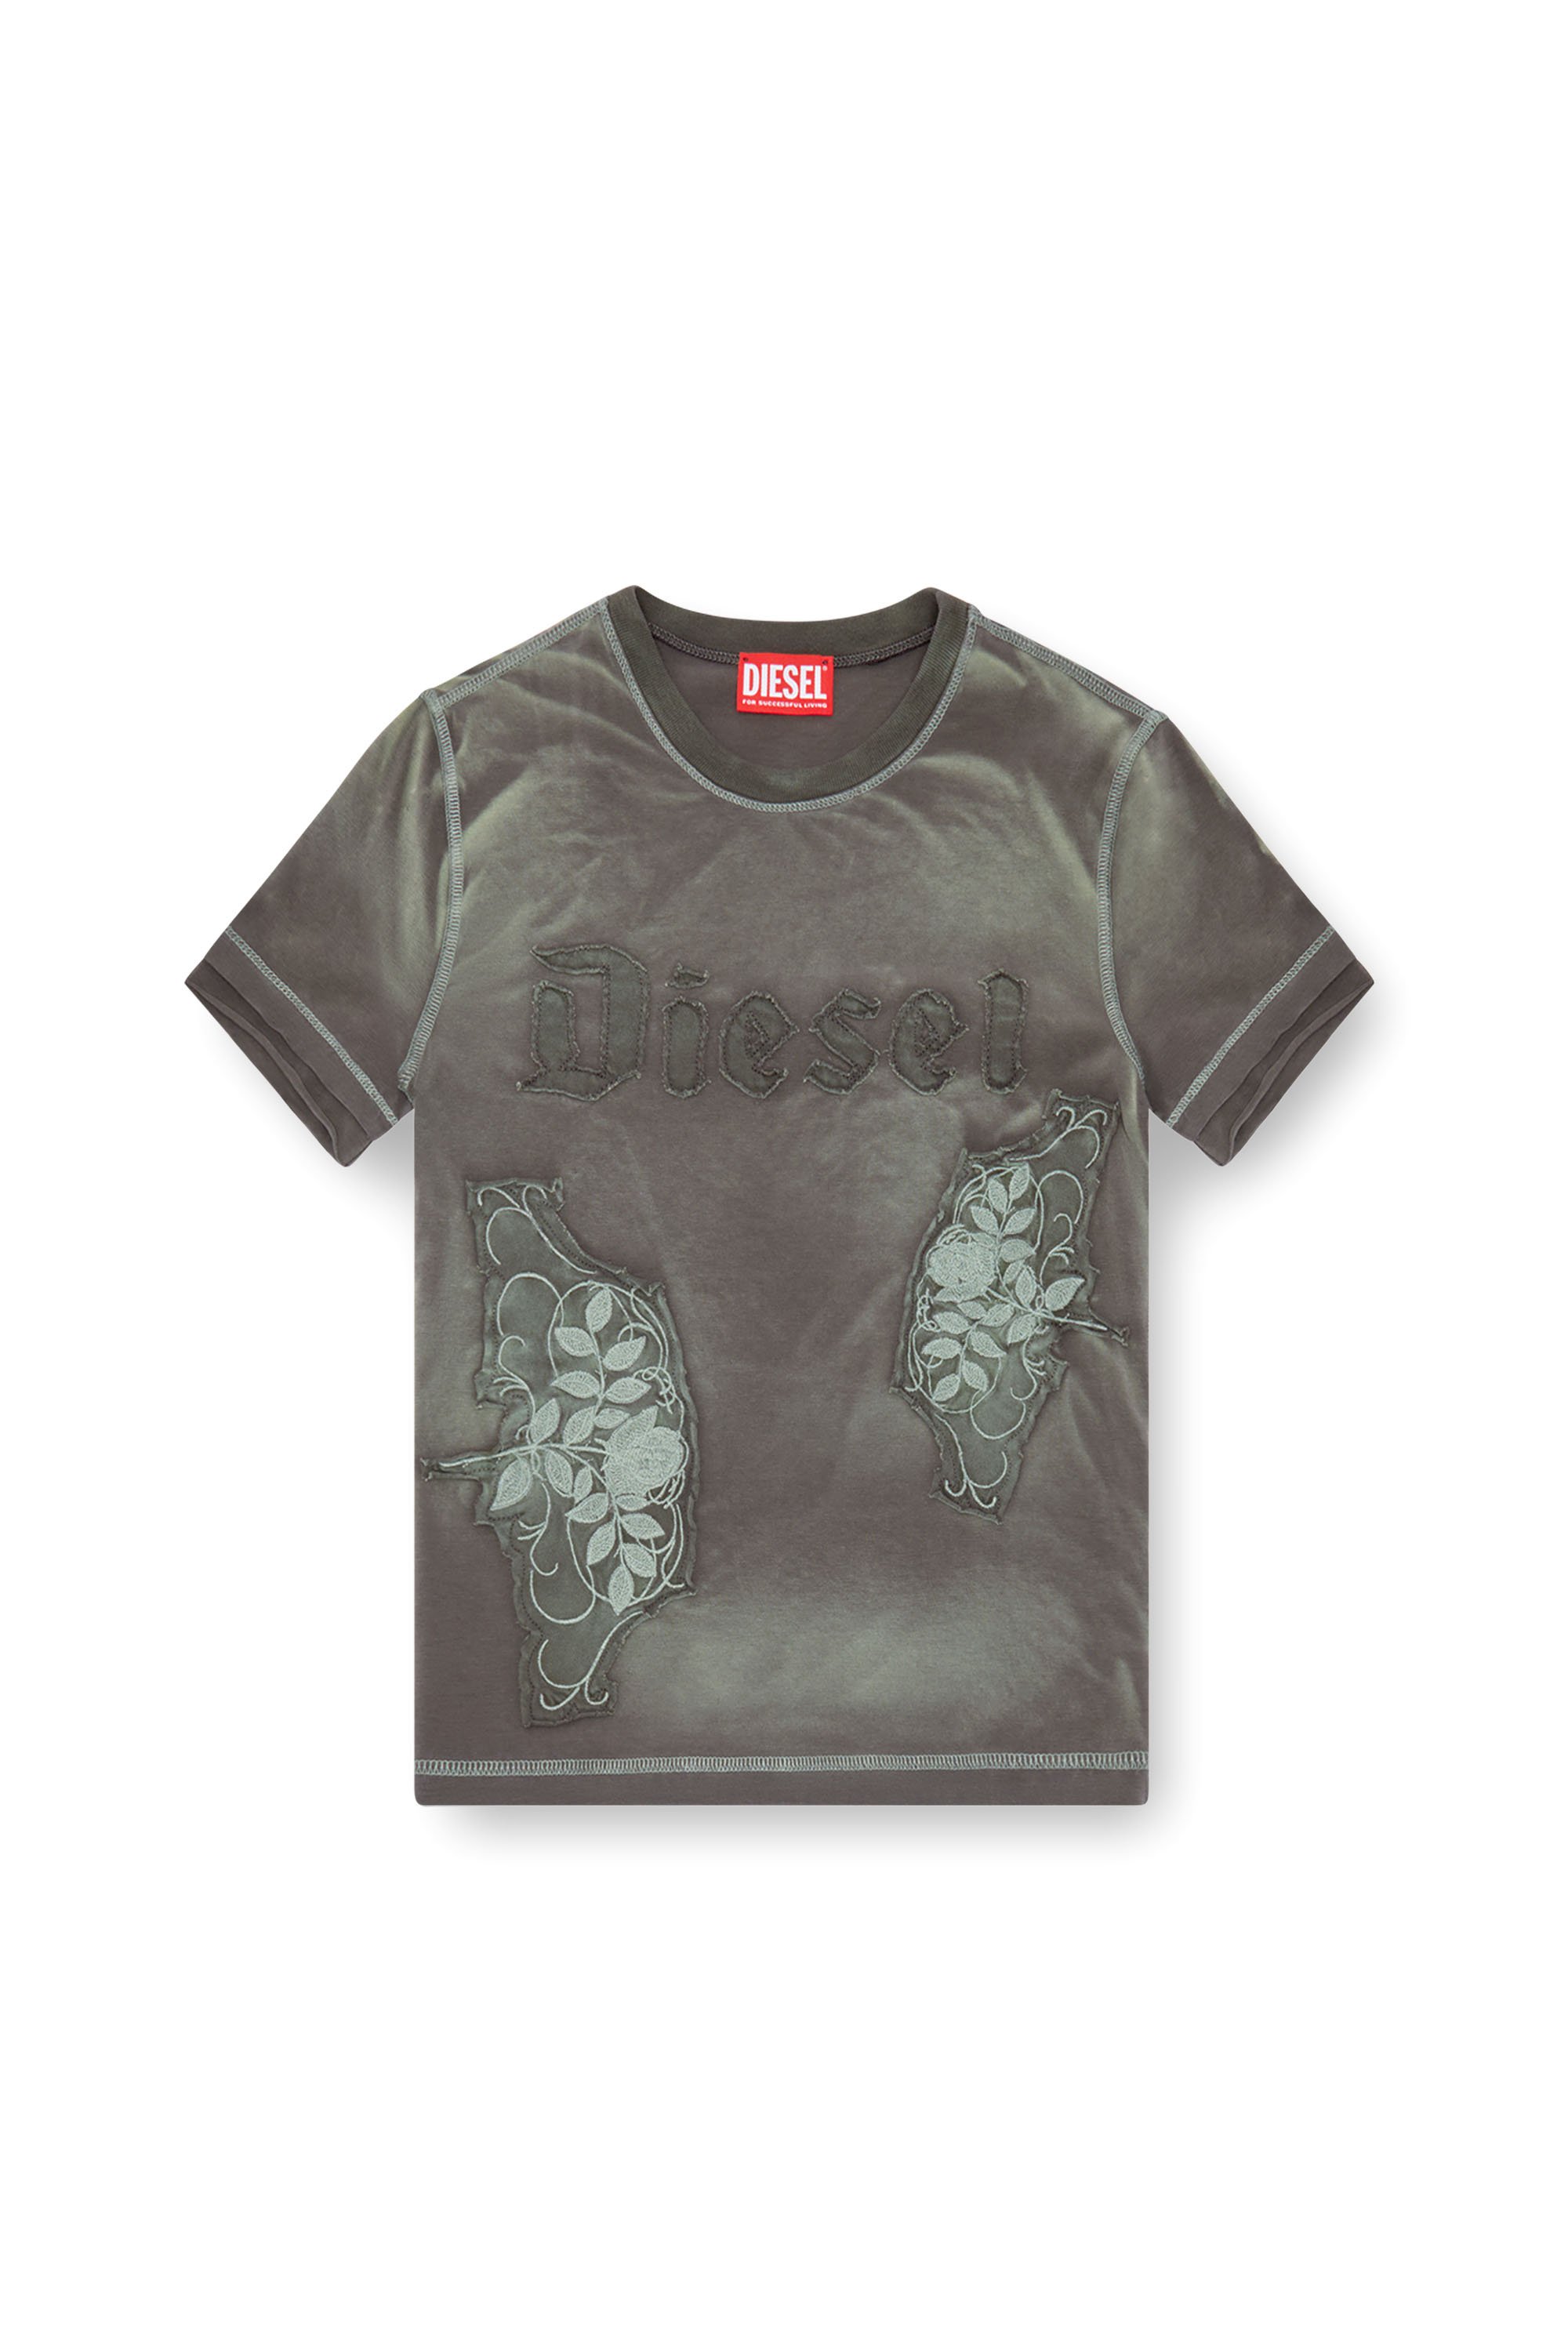 Diesel - T-UNCUT, Femme T-shirt avec empiècements fleuris brodés in Vert - Image 4